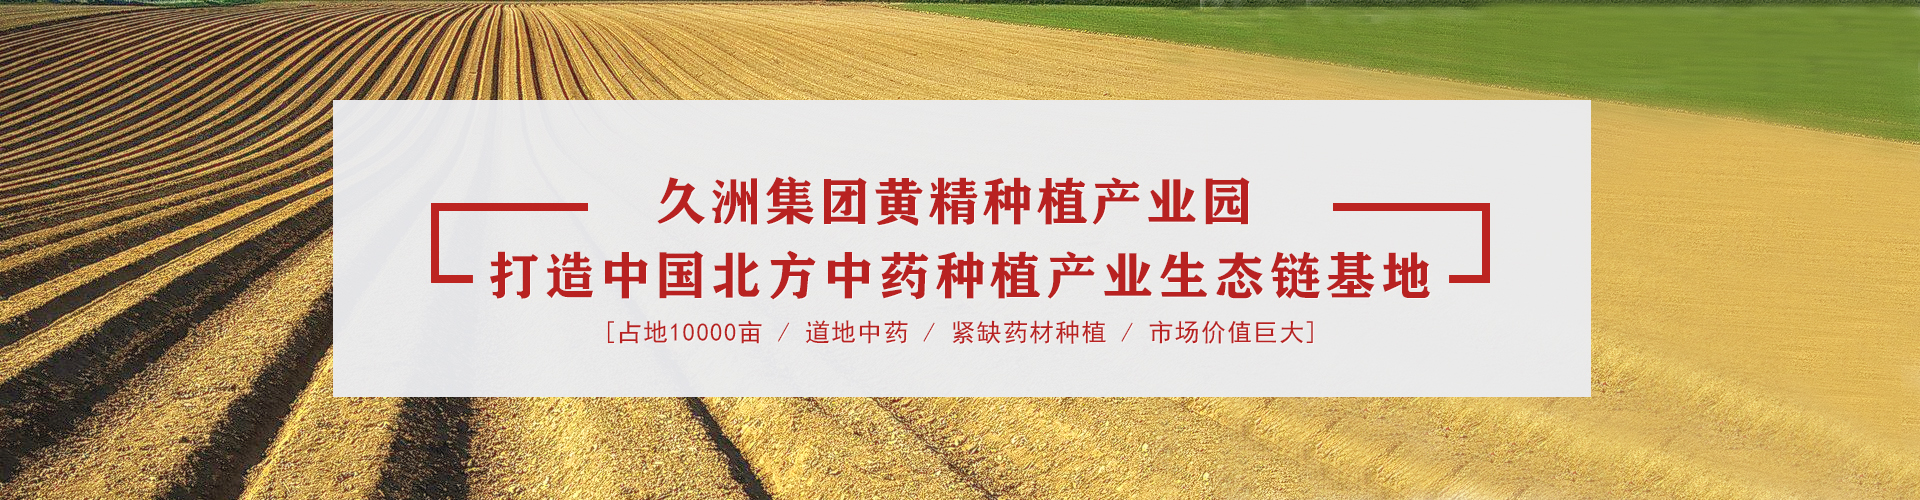 黃精產業園橫幅網站海報